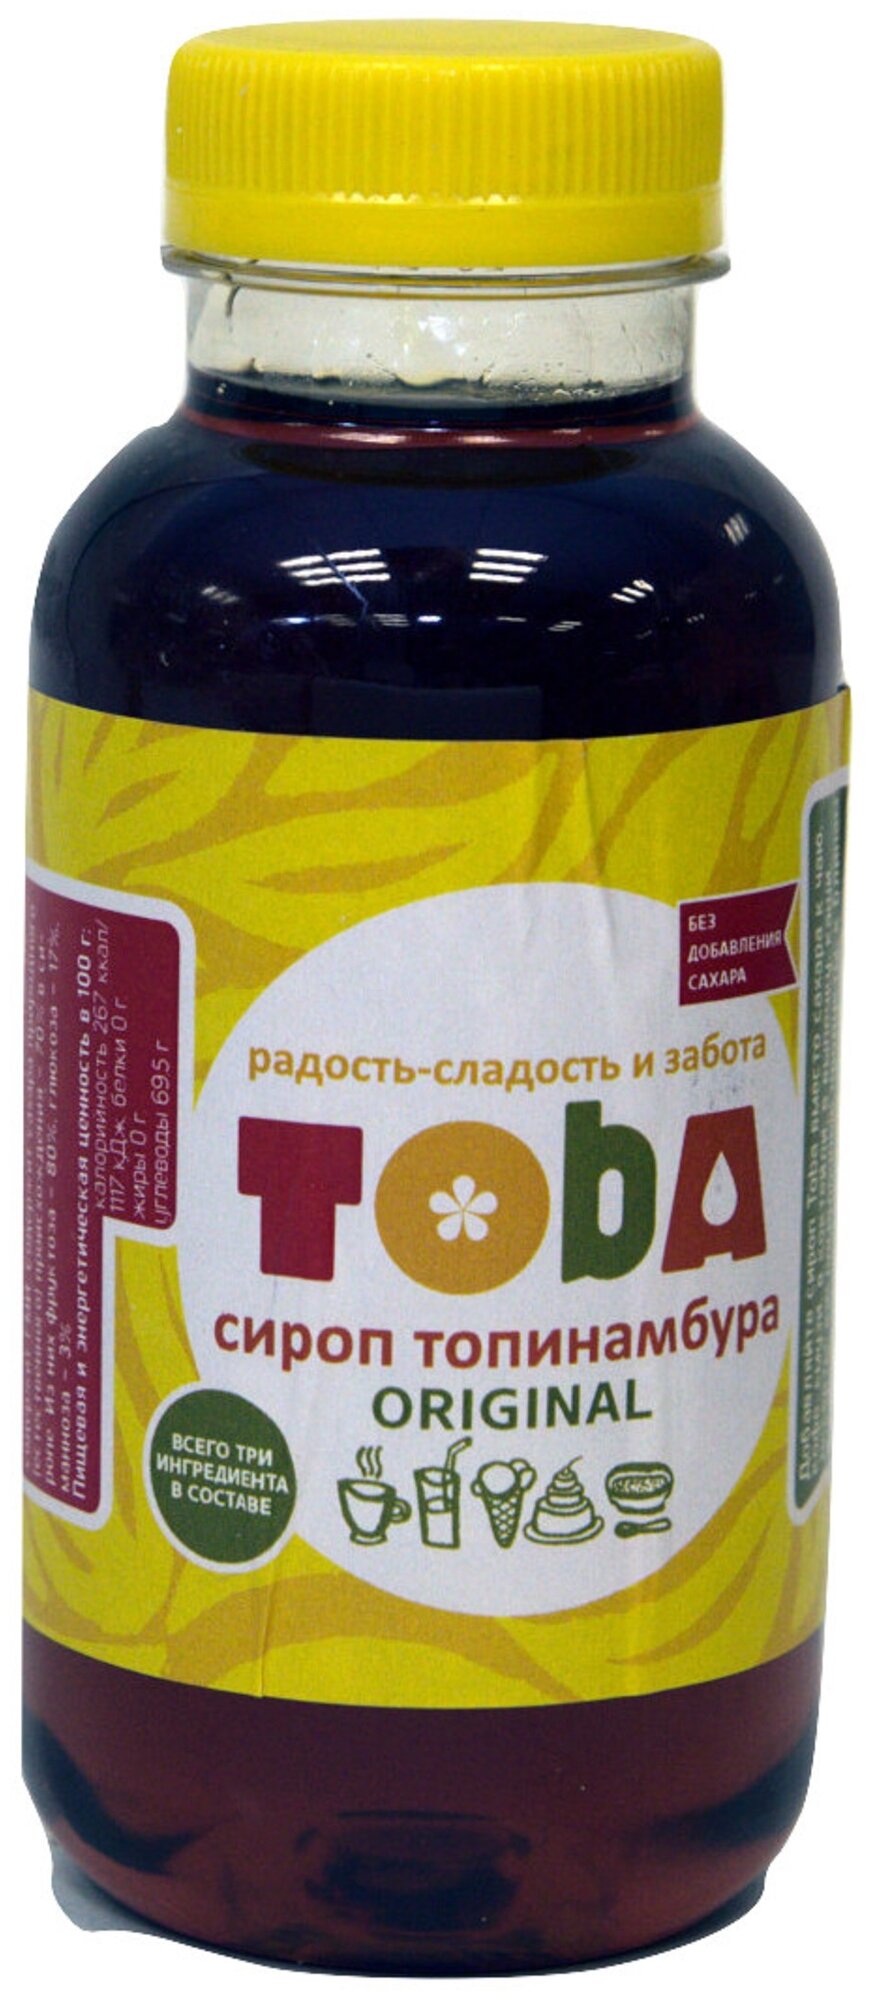 Сироп топинамбура Toba, 400 г с лимонным соком